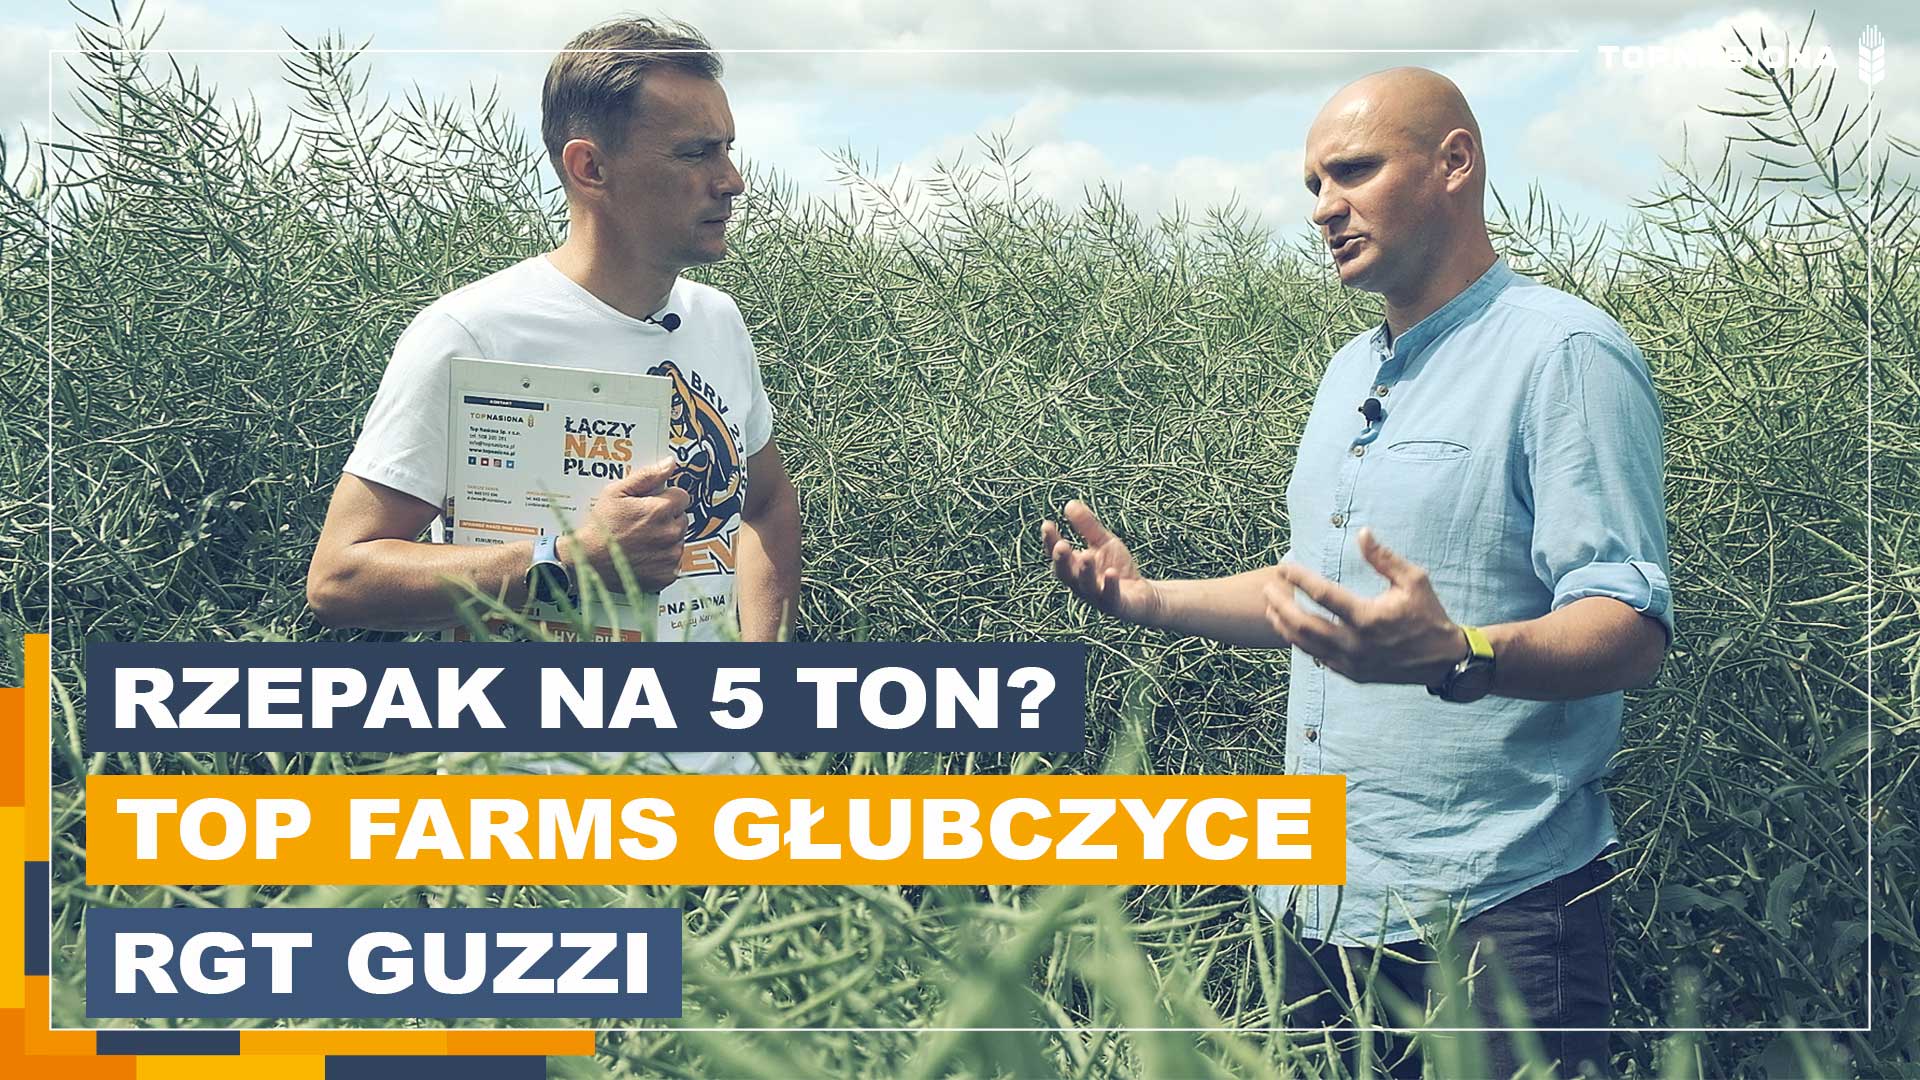 Jak uzyskać plon 5 t/ha rzepaku? Sprawdź naszą rozmowę z ekspertem od uprawy rzepaku Marcinem Markowiczem z Top Farms Głubczyce.